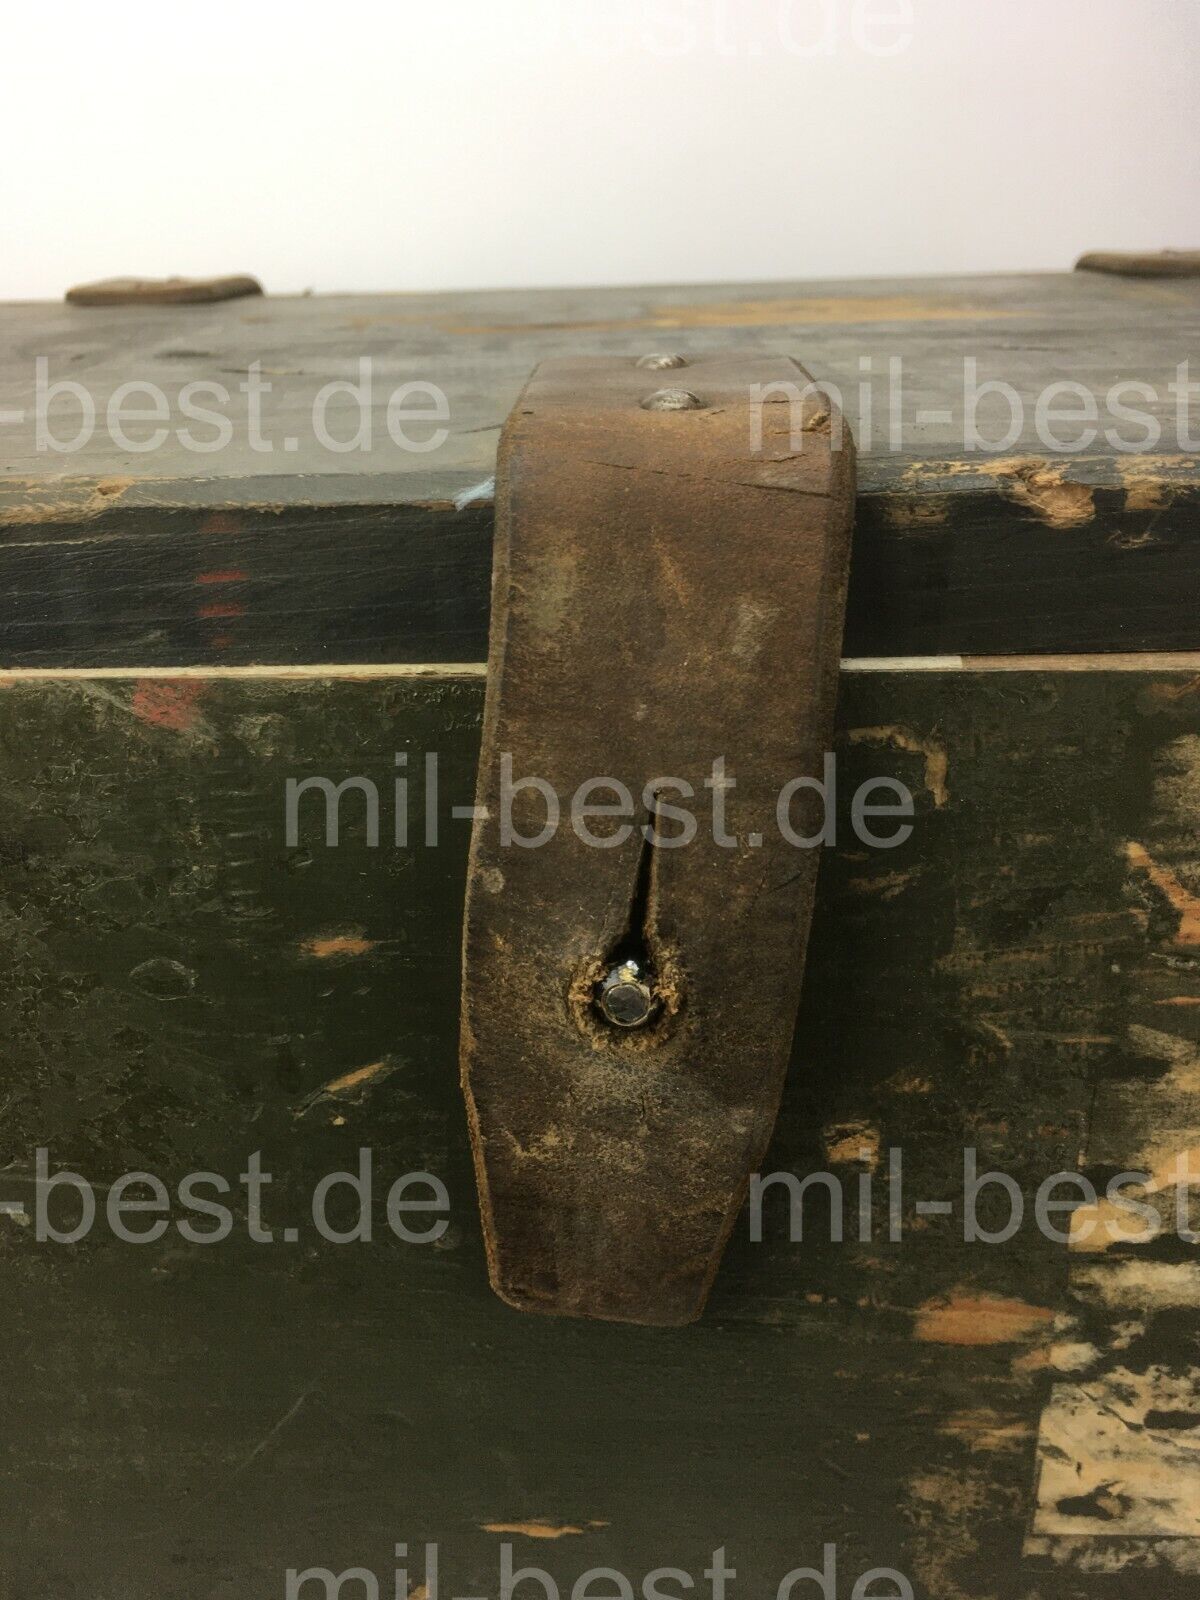 Holzkiste, Kiste 46 x 28 h = 36 cm "TASCHENLAMPEN" ALT ex. Schweizer Armee (100)